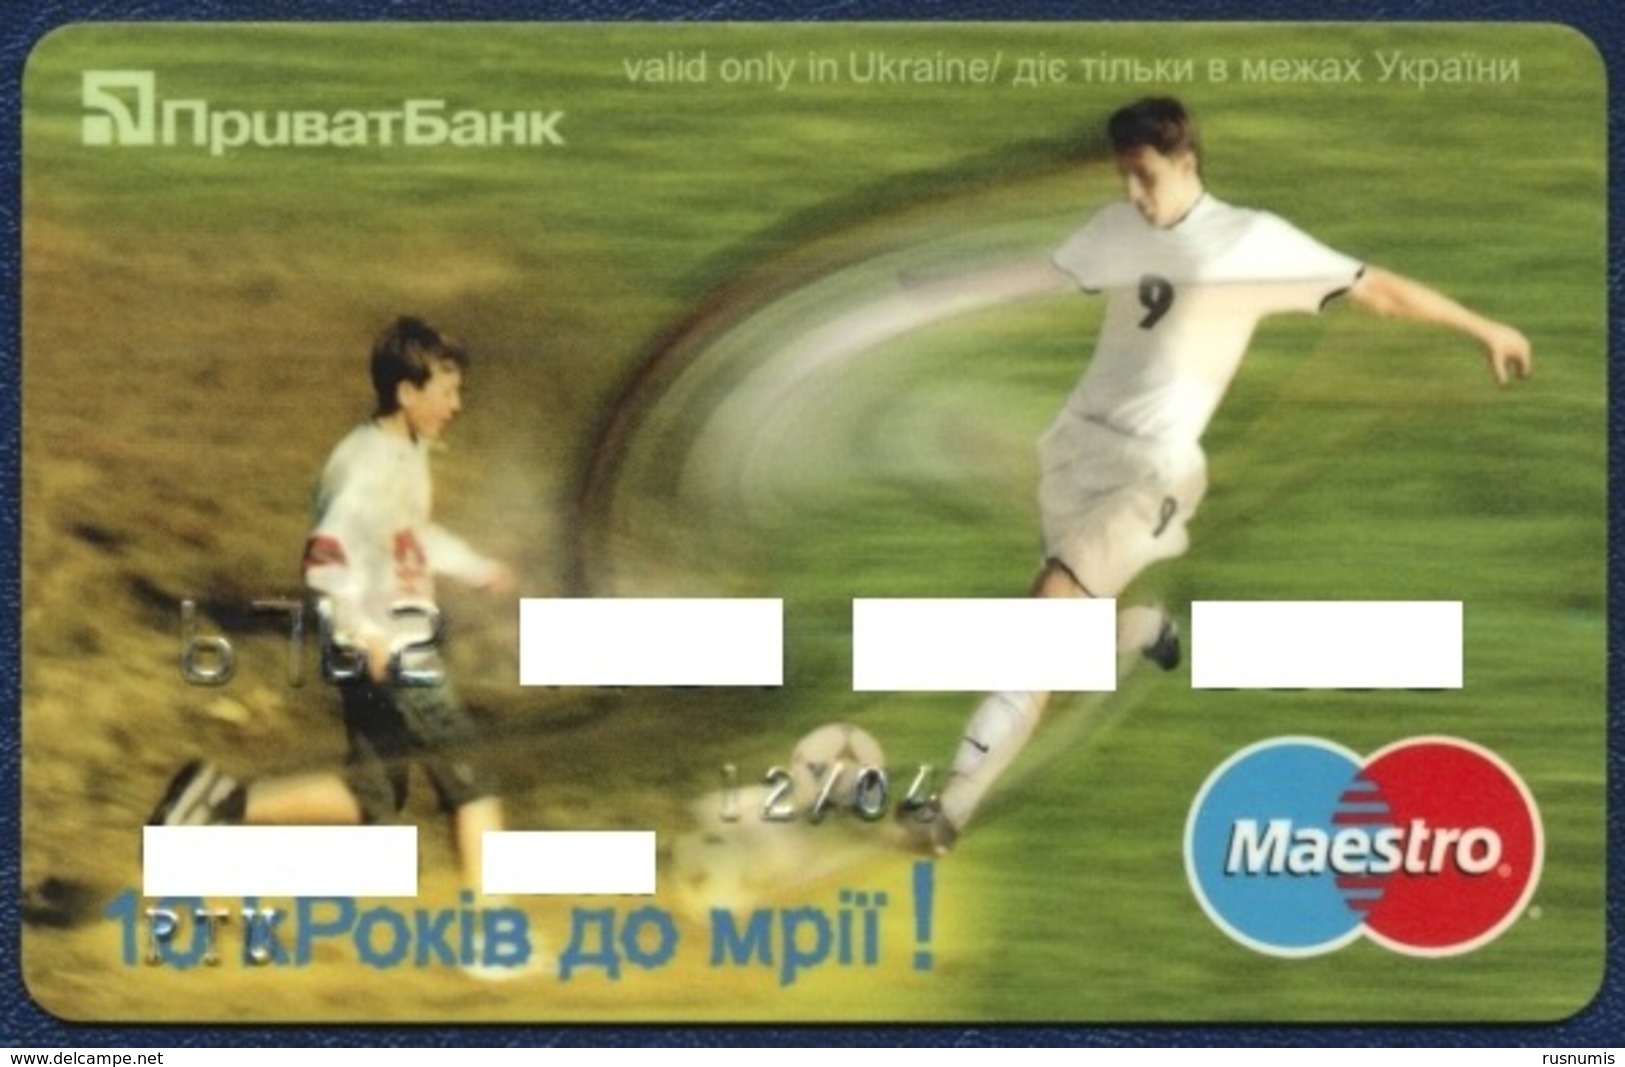 UKRAINE PRIVATBANK MAESTRO BANK CARD SPORT SOCCER PERFECT USED CONDITION EXP. 2004 - Cartes De Crédit (expiration Min. 10 Ans)